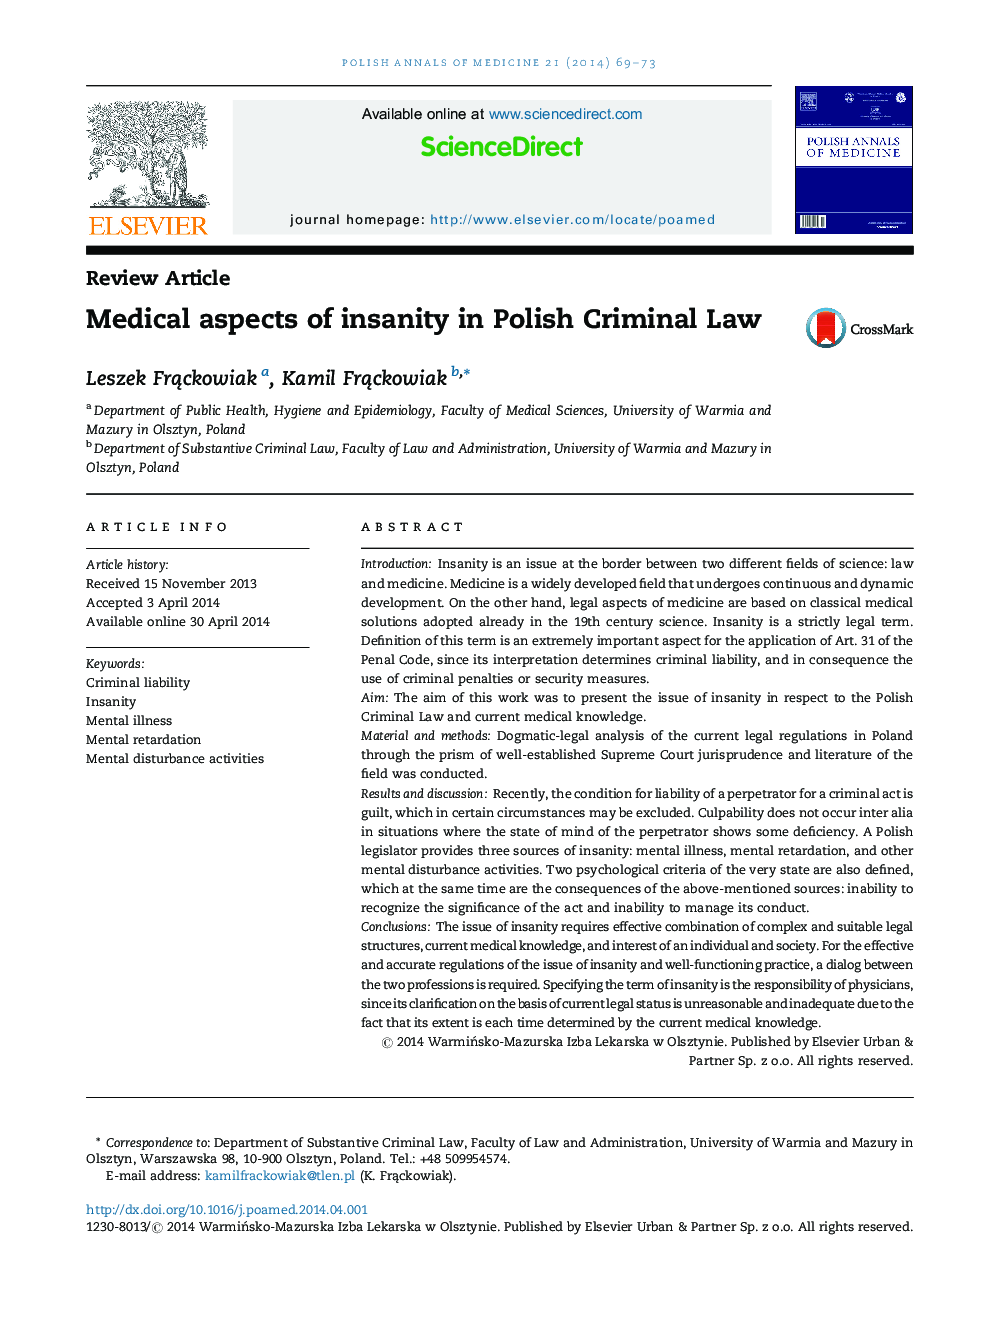 جنبه های پزشکی جنون در حقوق جزای لهستانی